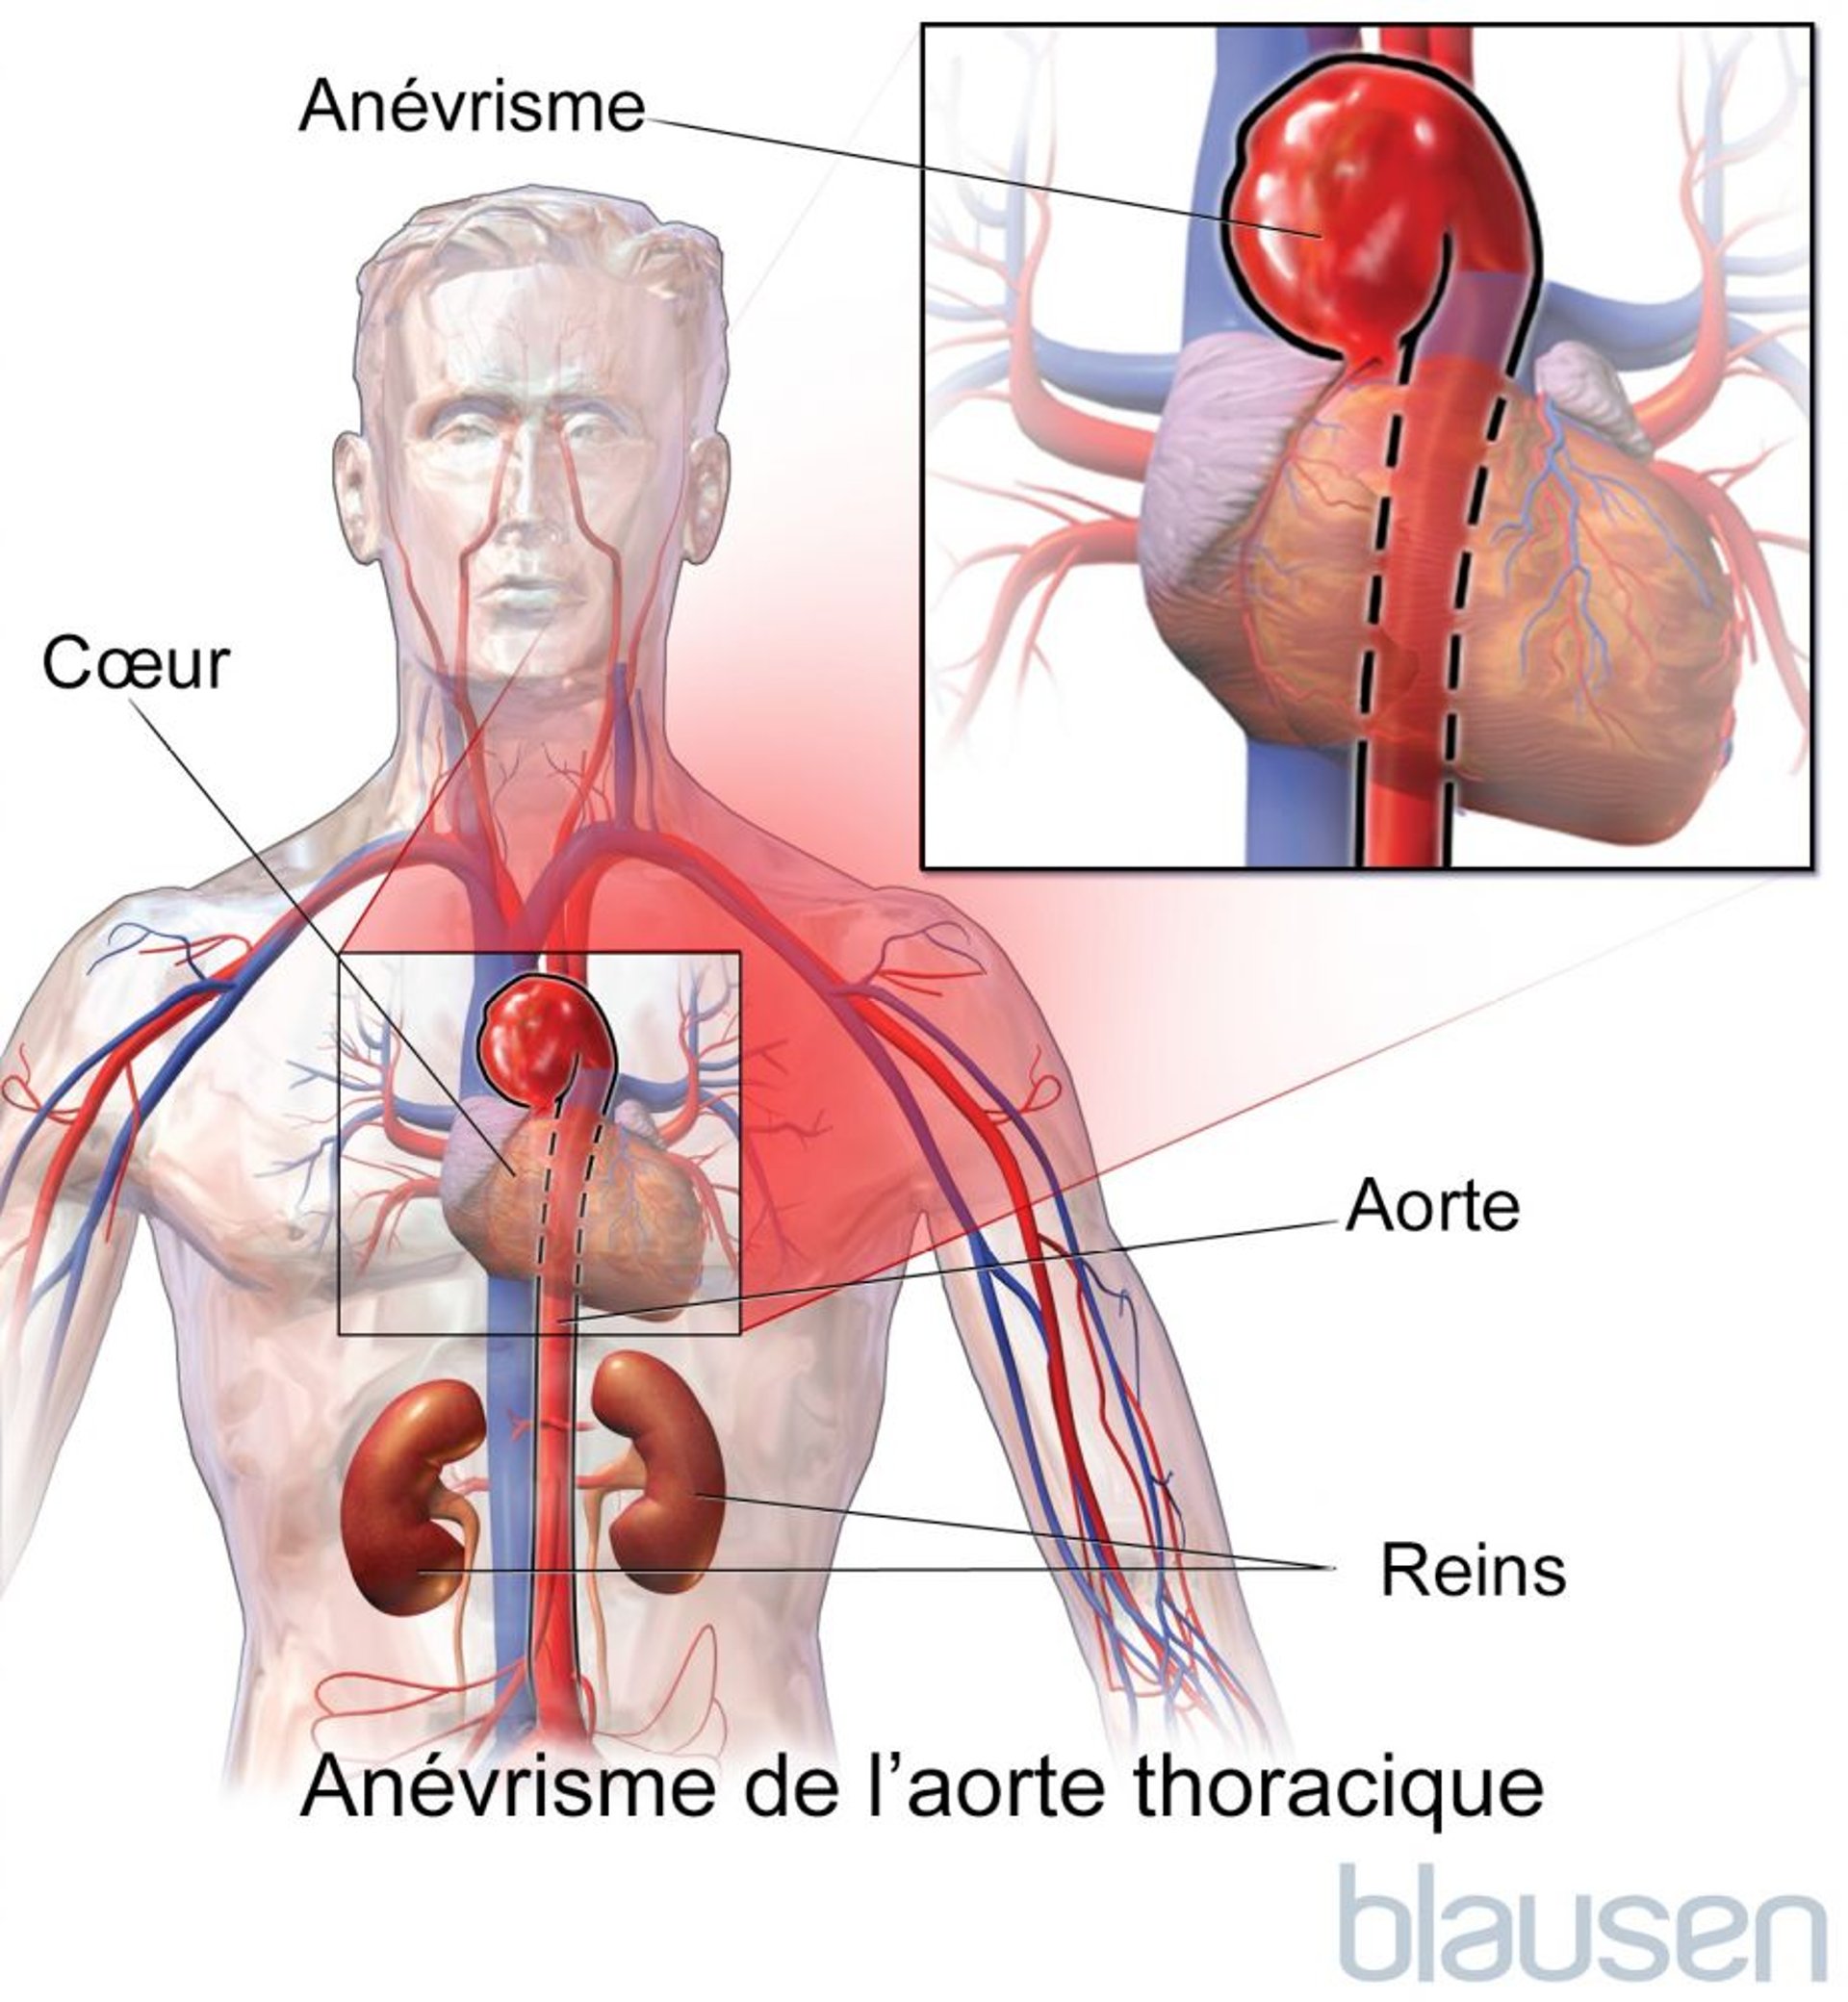 Anévrisme de l’aorte thoracique